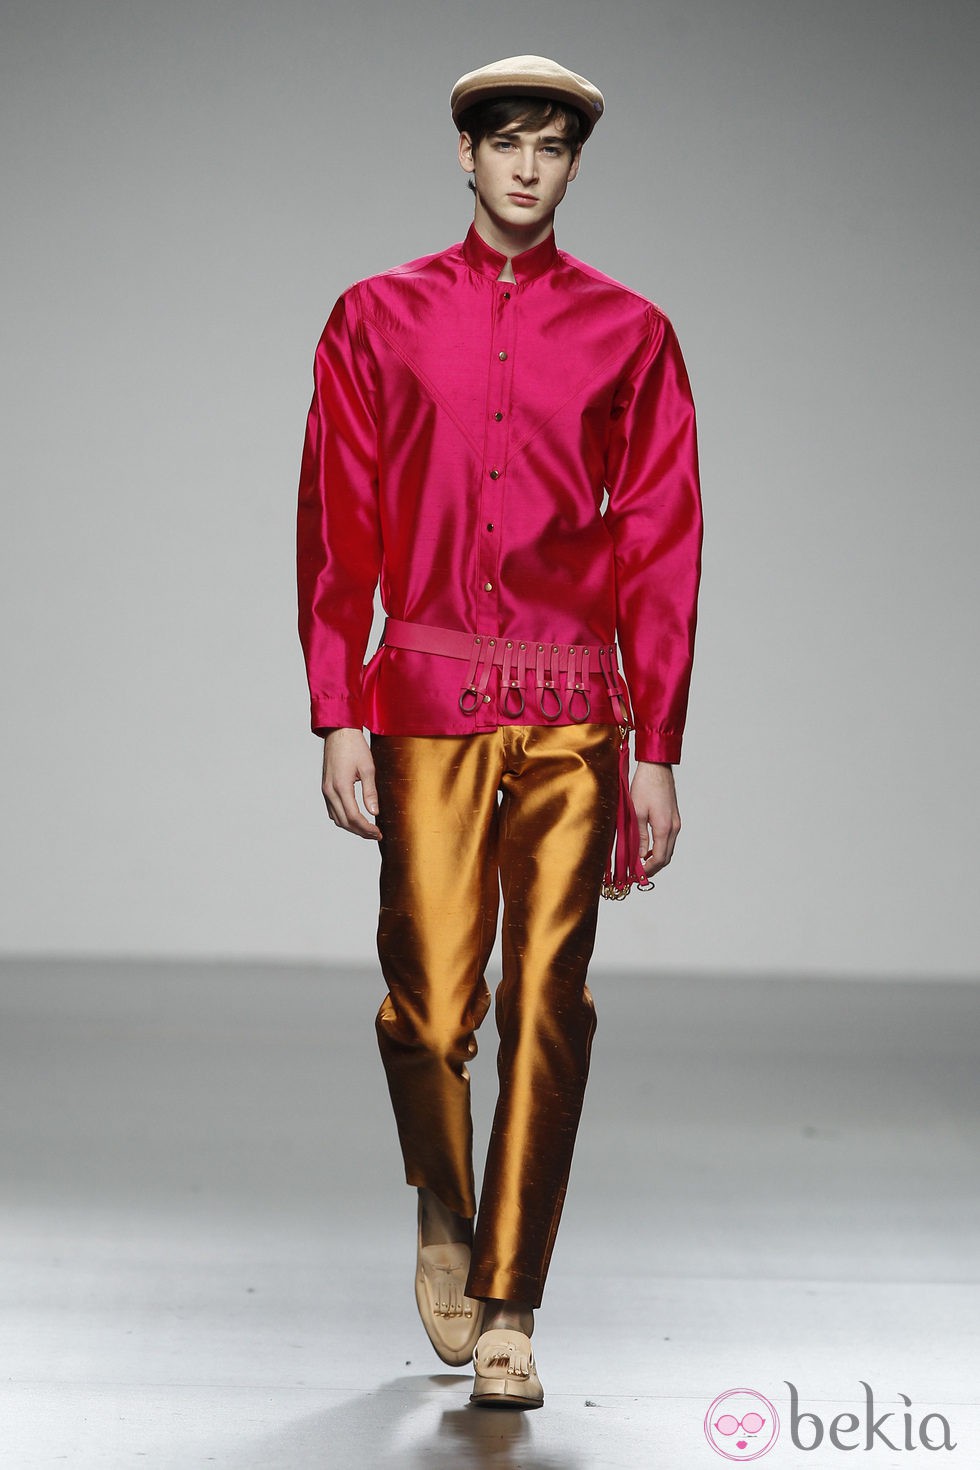 Diseño en seda rosa y dorada de Ixone Elzo en 'El Ego' de Fashion Week Madrid